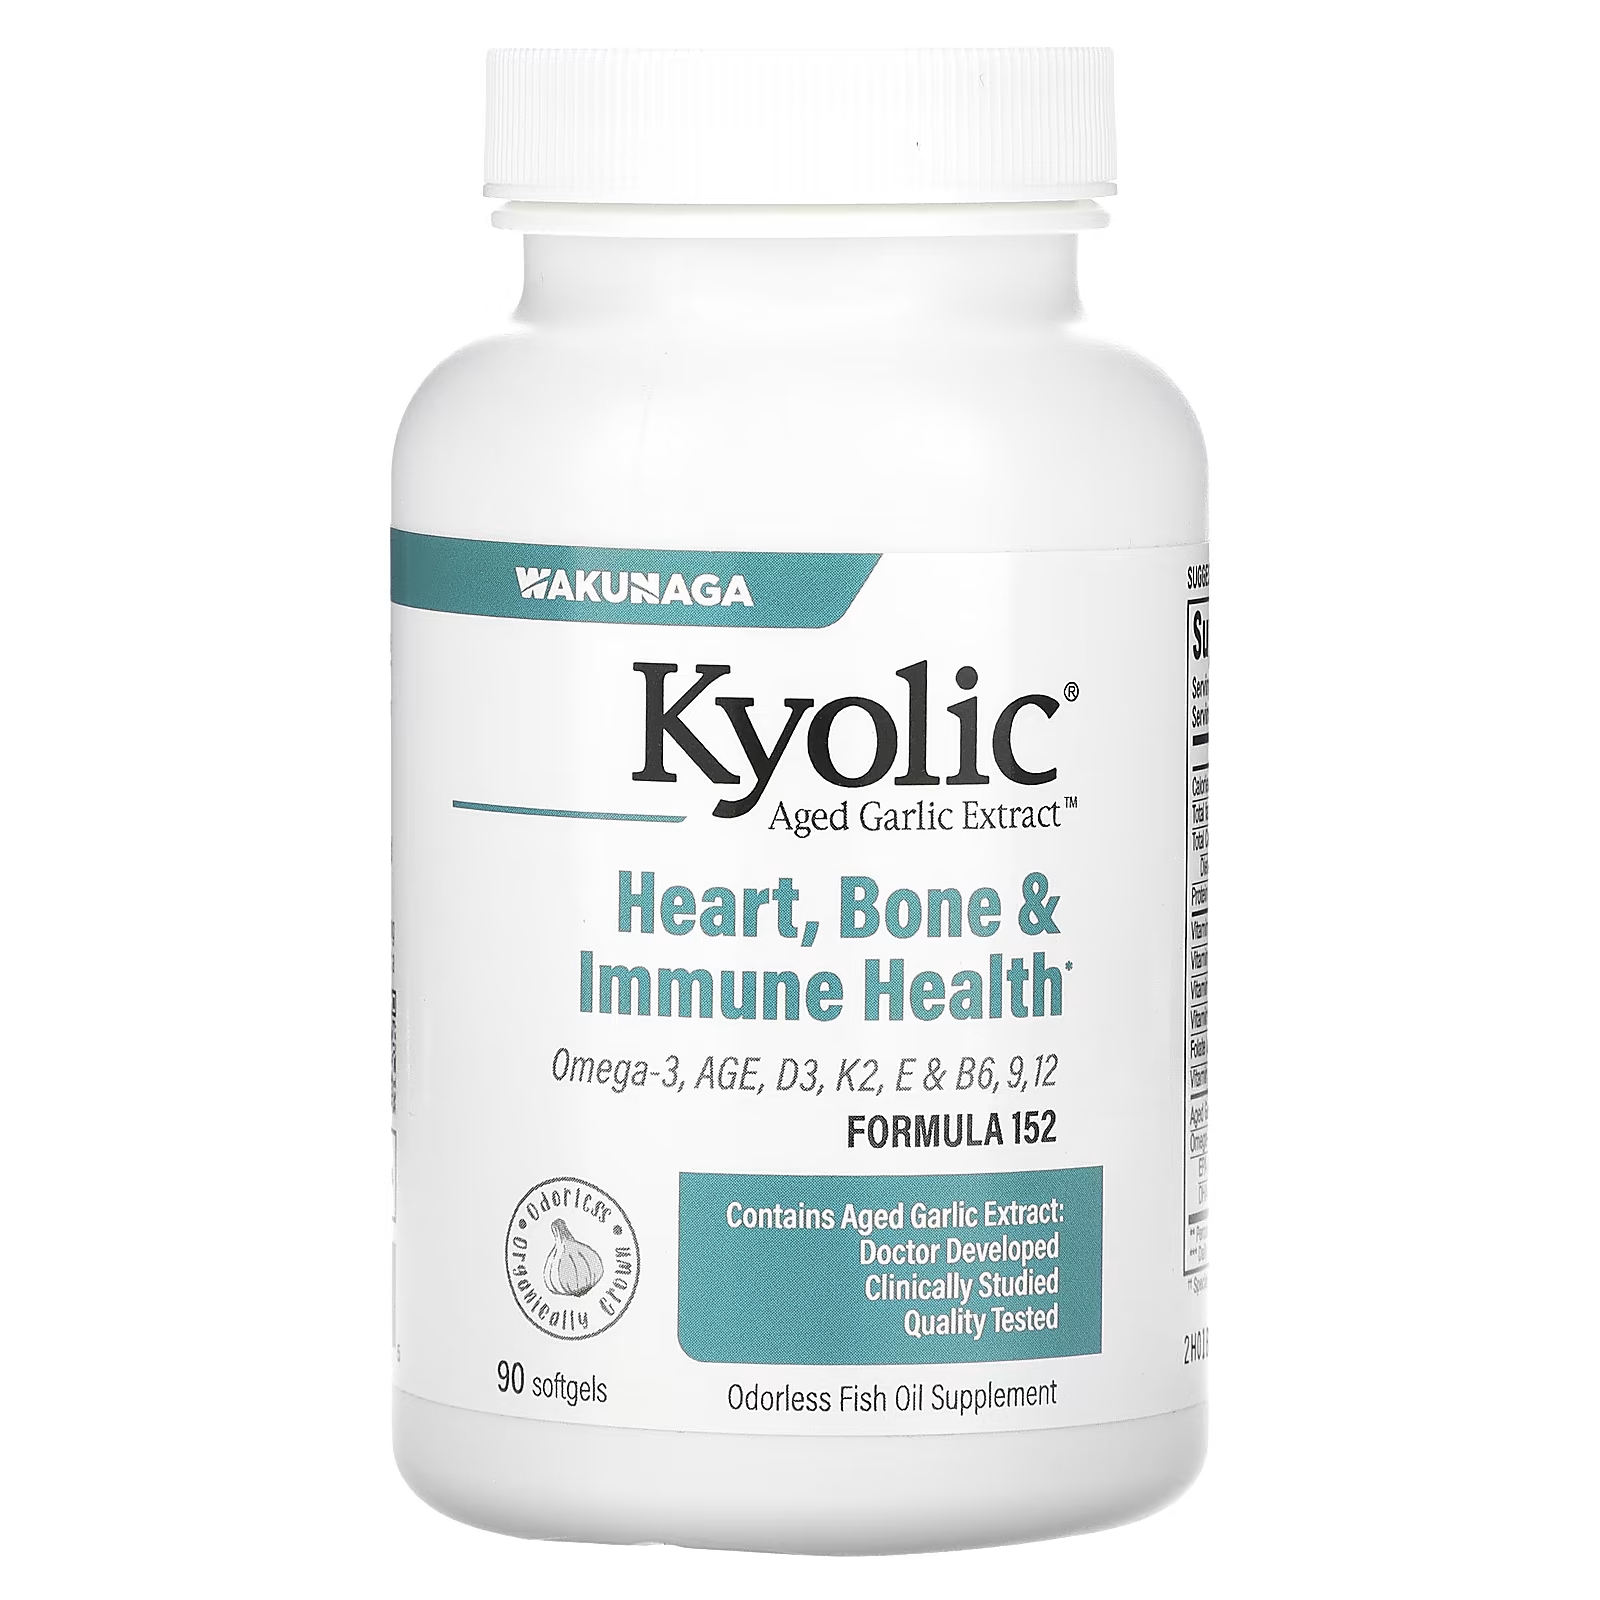 Здоровье костей и иммунитета Kyolic, 90 мягких таблеток kyolic aged garlic extract выдержанный чесночный экстракт для сердечно сосудистой системы оригинальный состав 100 капсул